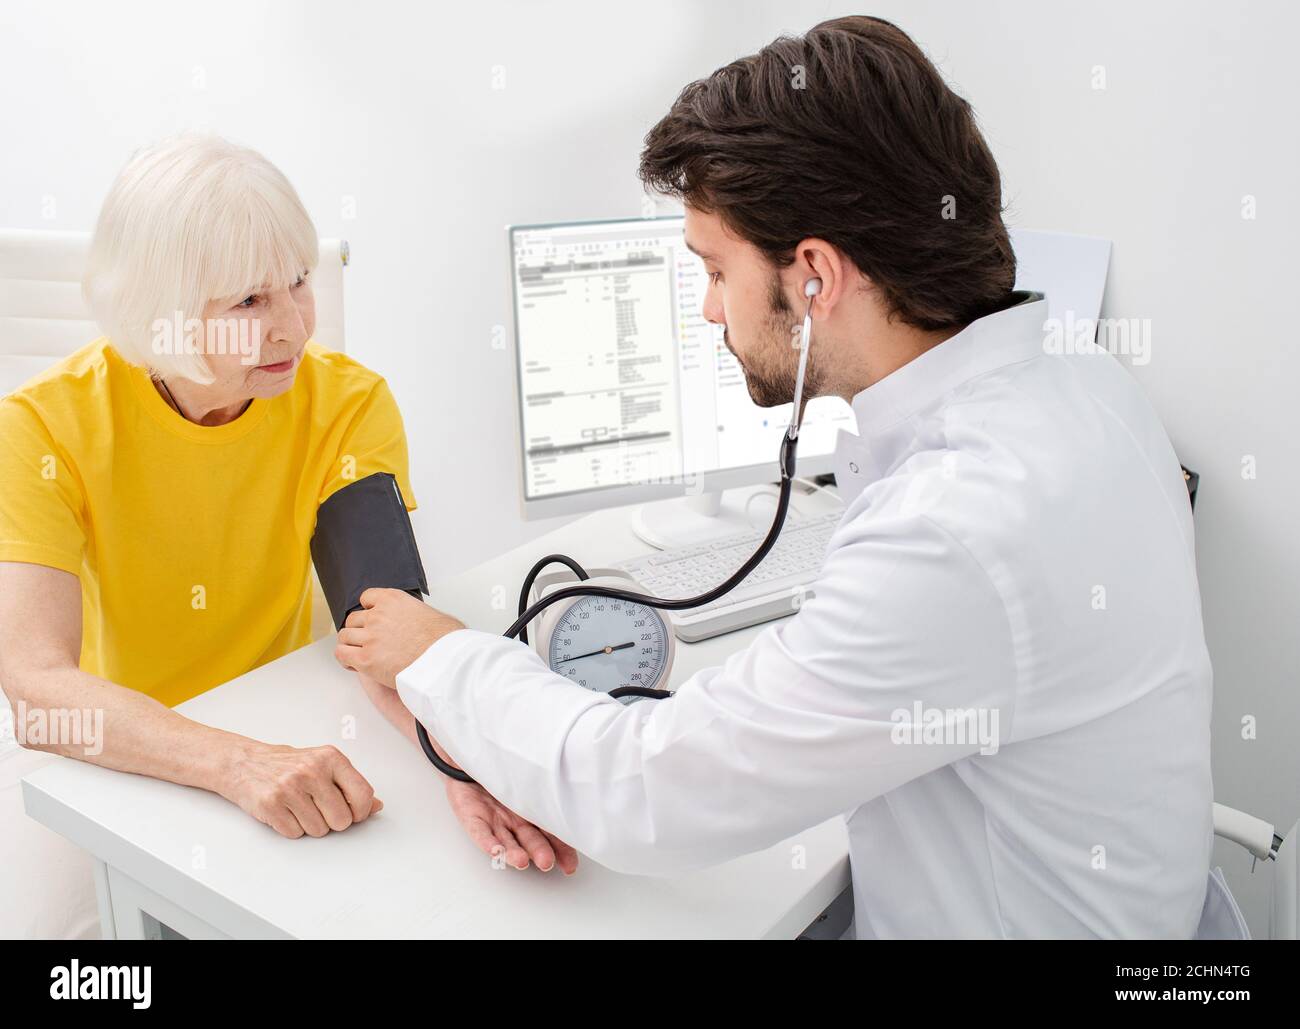 Arzt zur Messung des arteriellen Blutdrucks einer älteren Frau. Ärztliche Vorsorgeuntersuchung Gesundheit, alter Patient Stockfoto